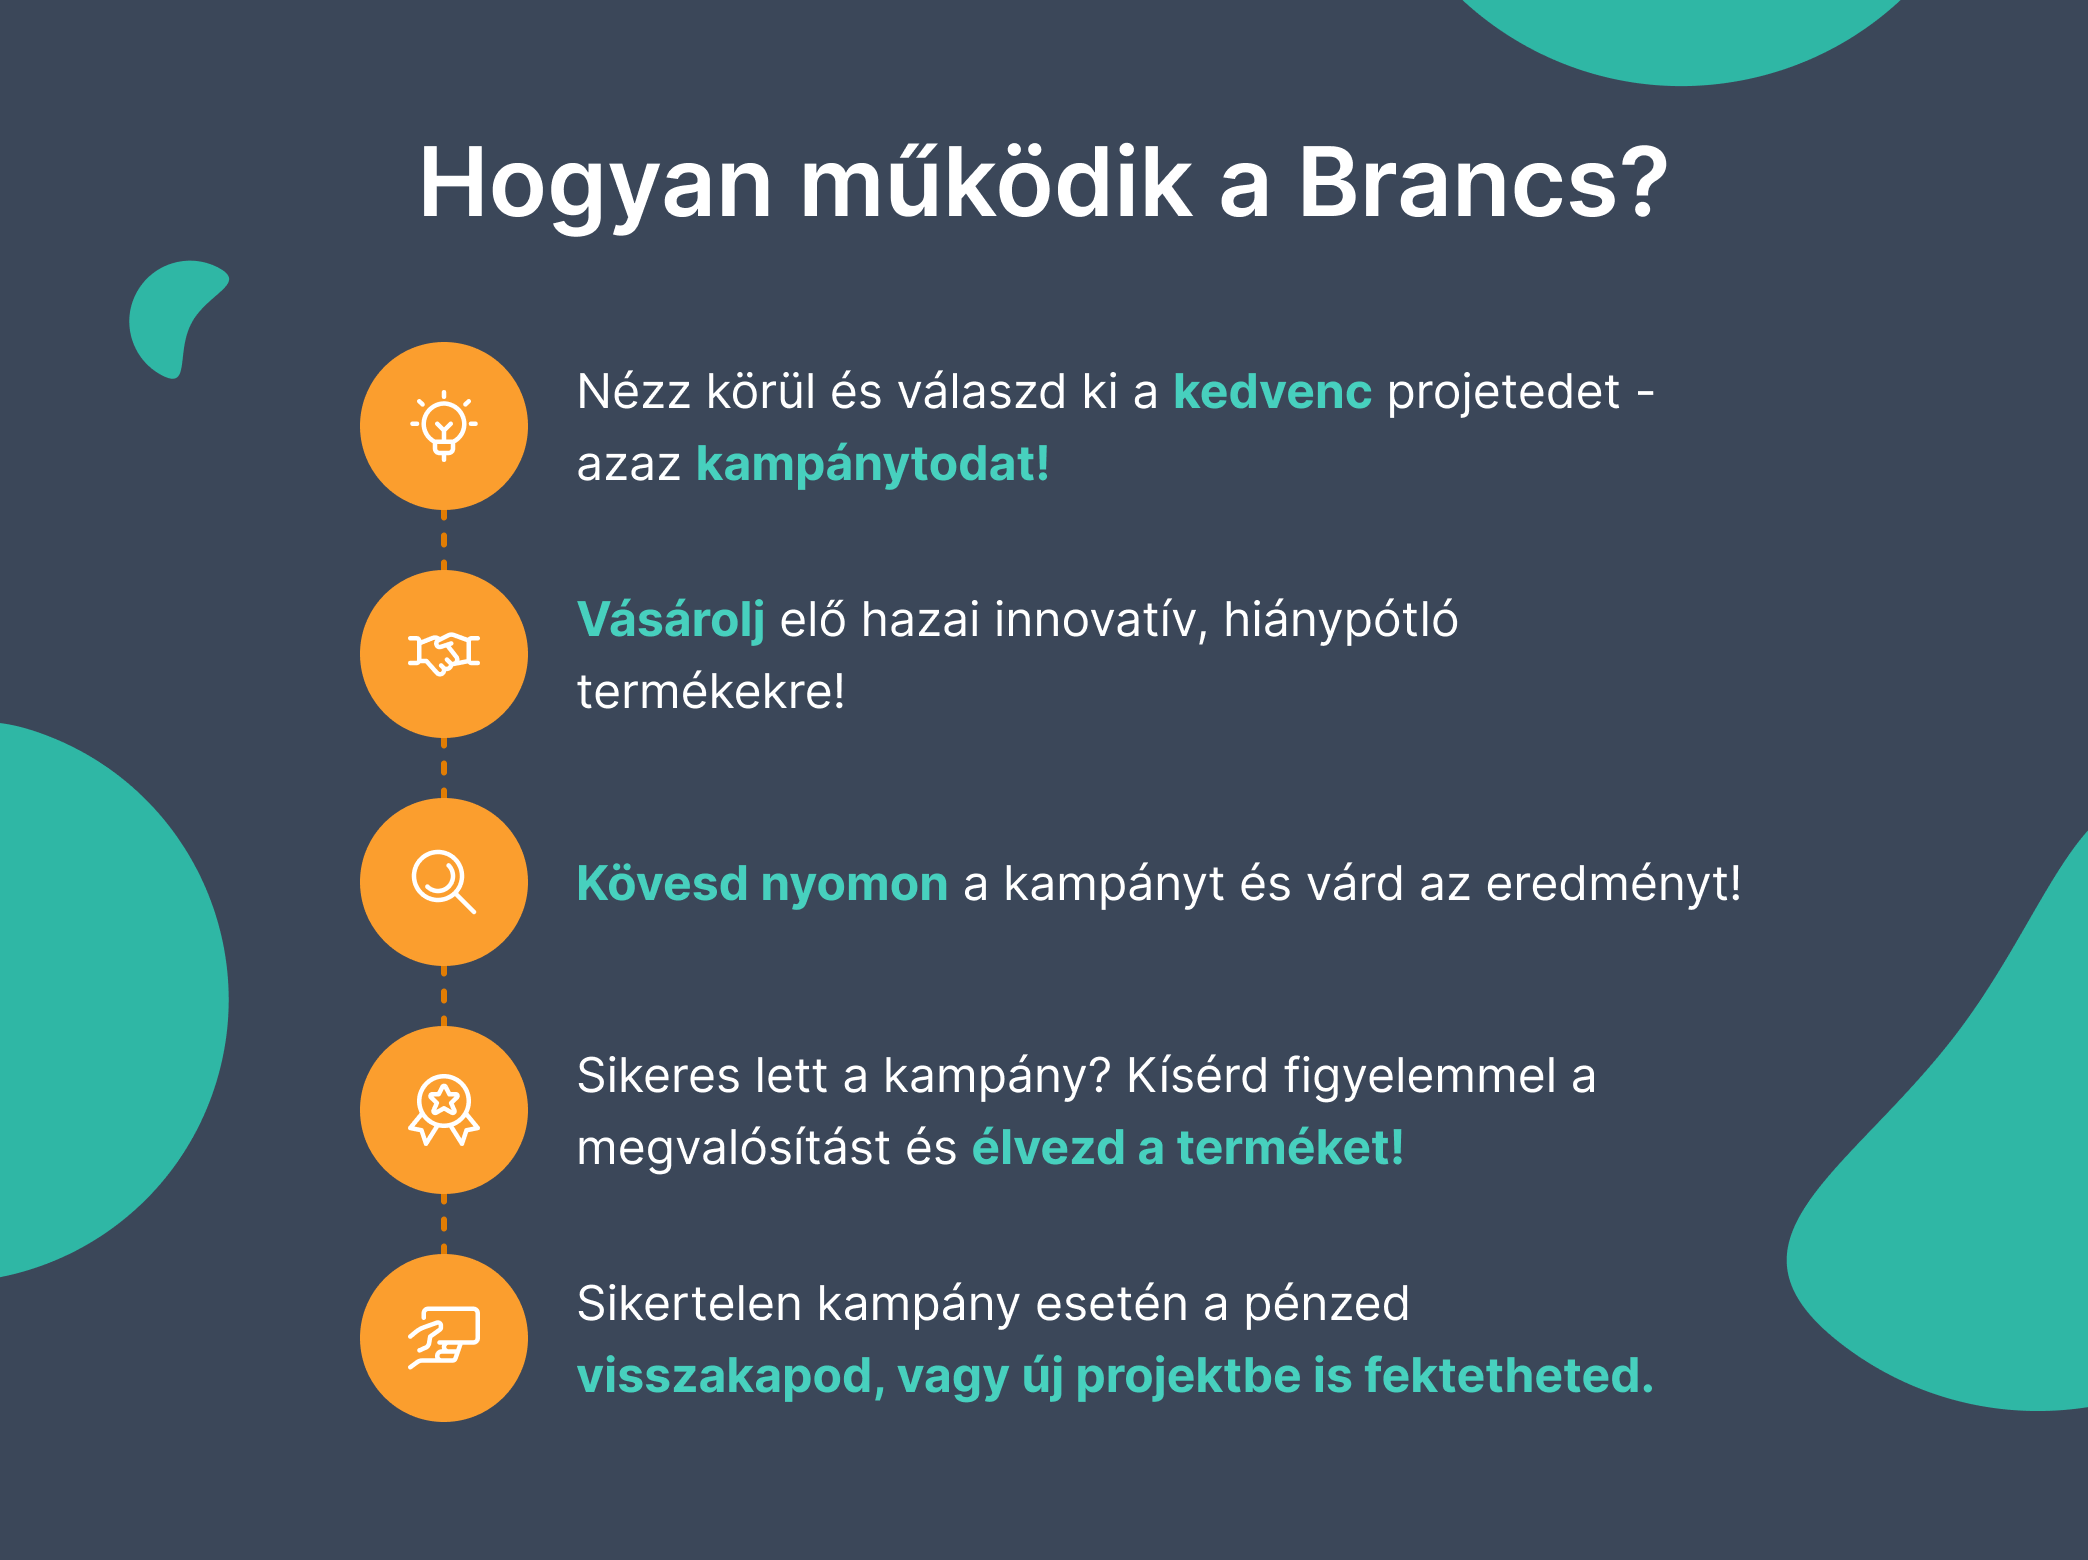 Hogyan működik a Brancs?